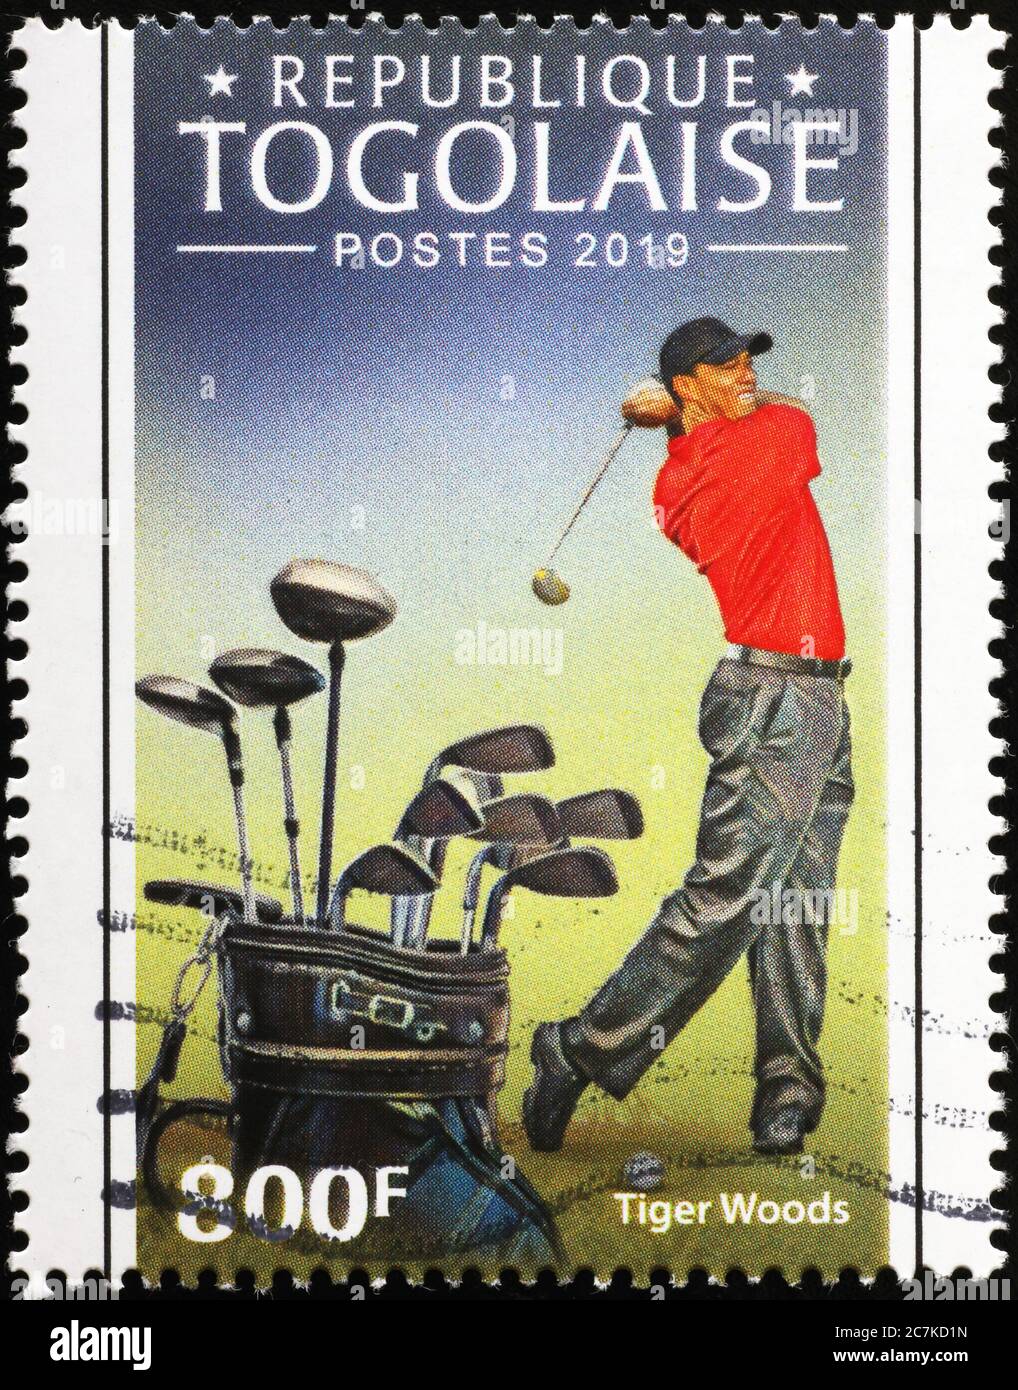 Tiger Woods en action sur timbre-poste du Togo Banque D'Images